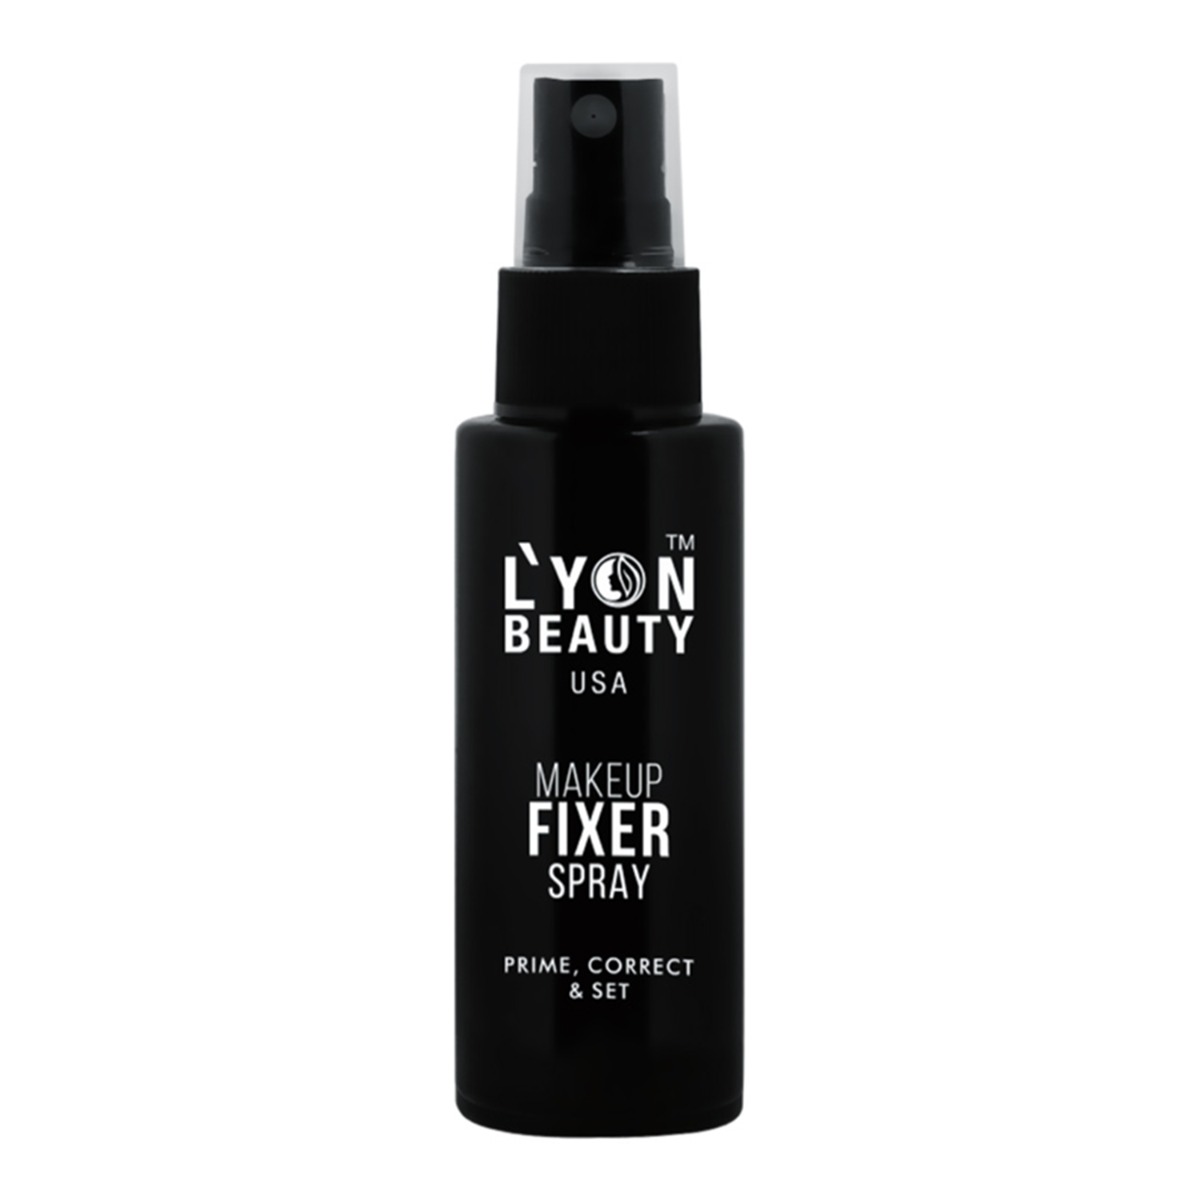 Lyon Beauty USA Makeup Fixer Spray Transparent, 50ml